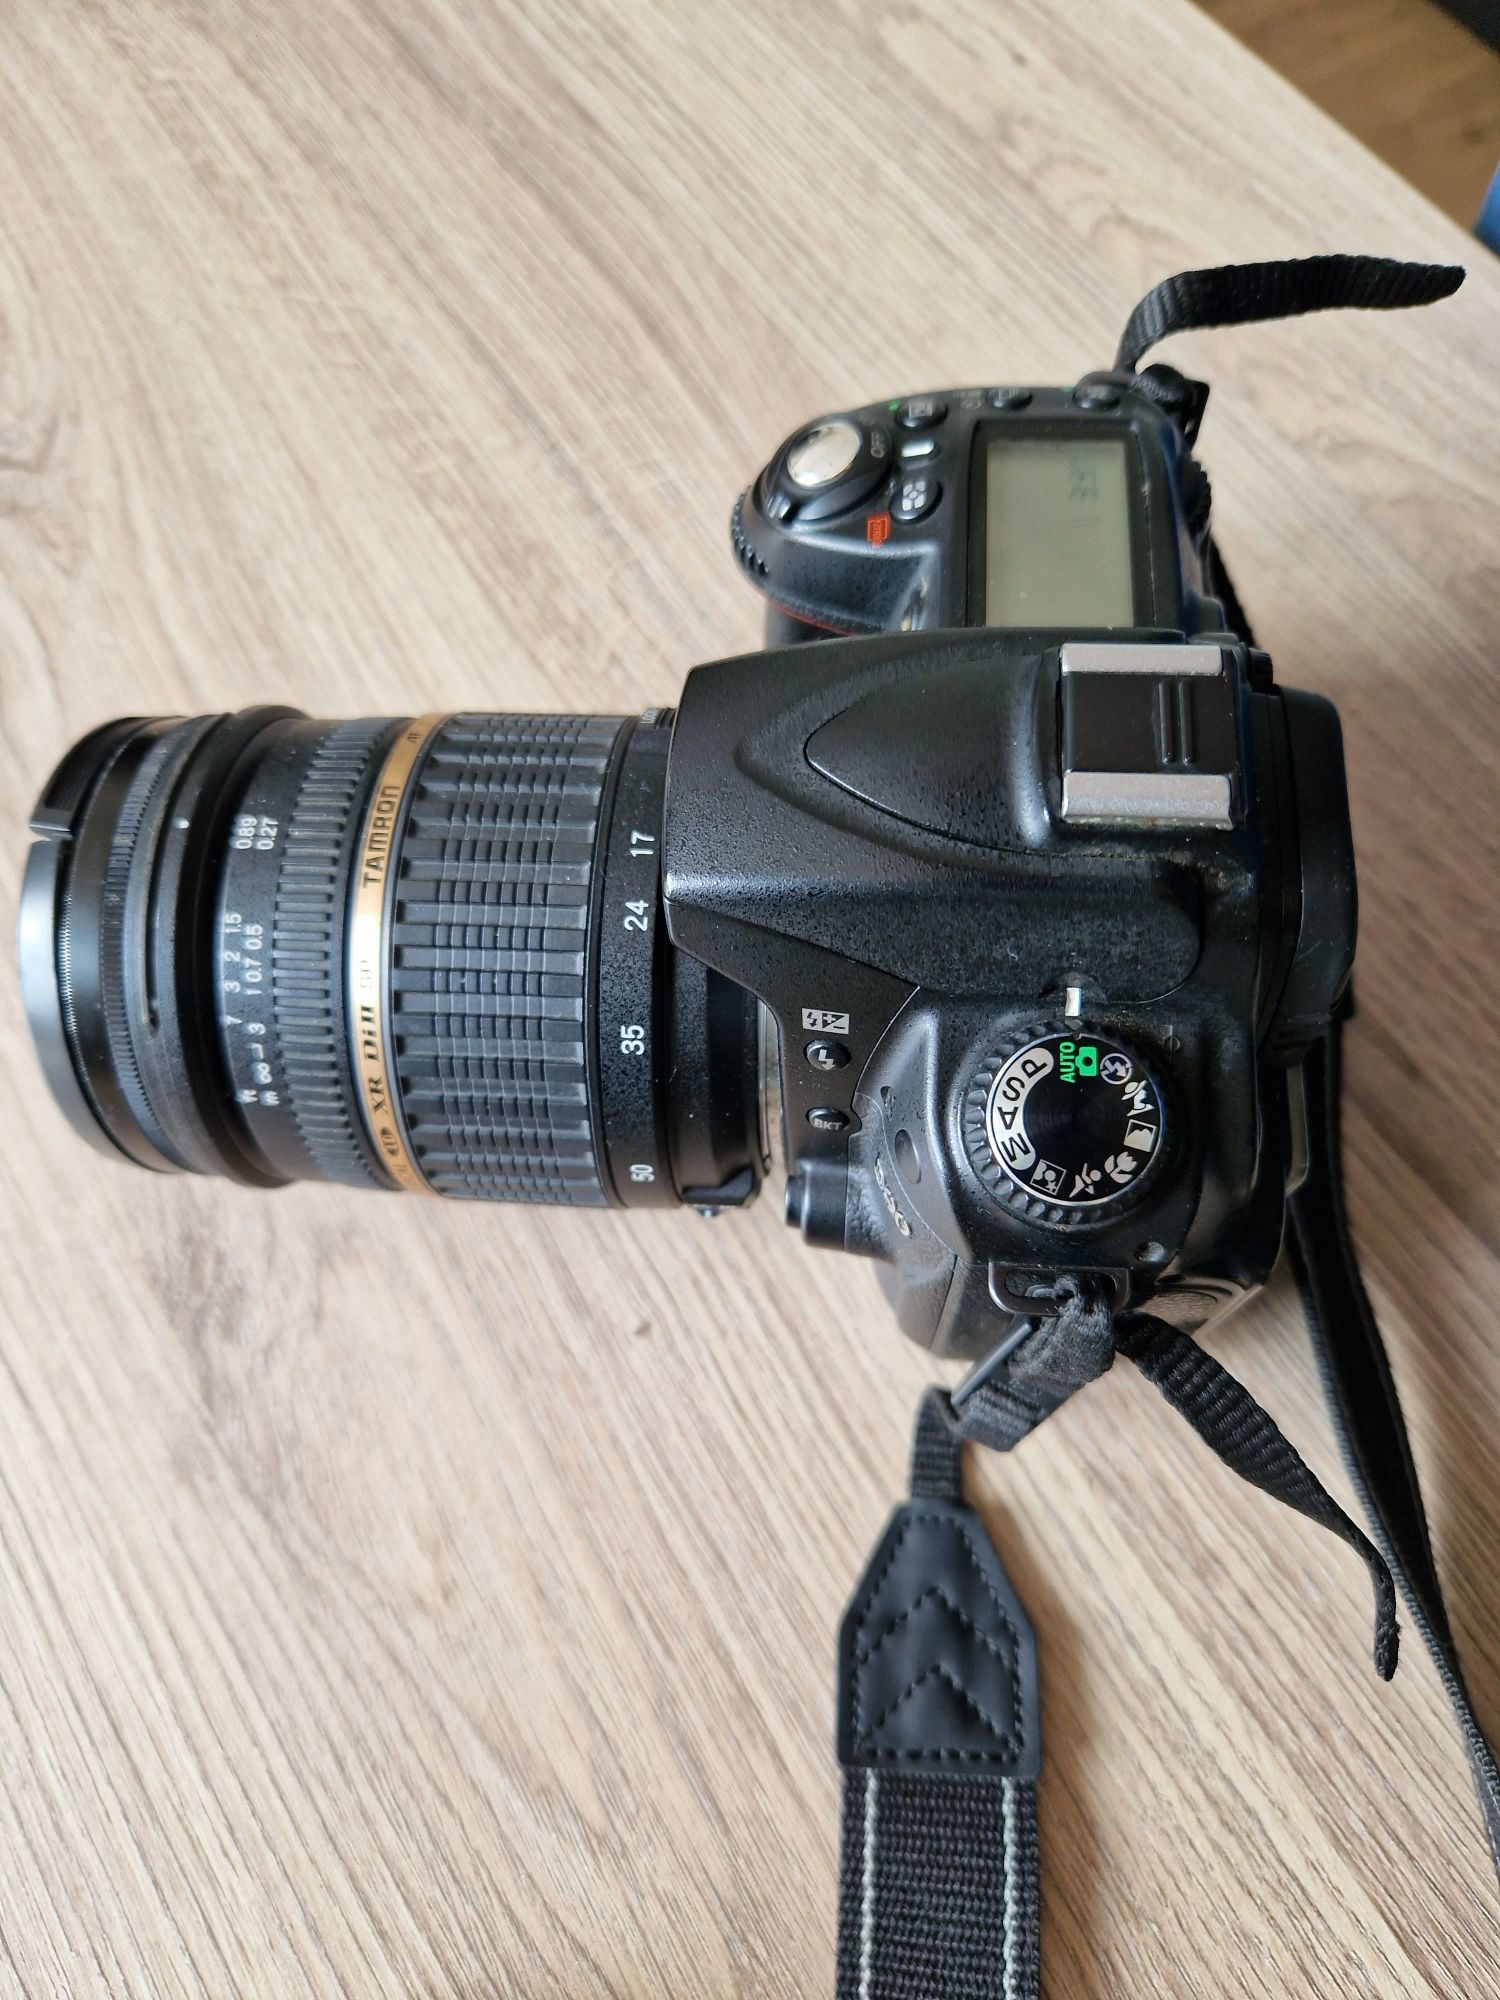 Фотоаппарат Nikkon D90 с объективом Tamron